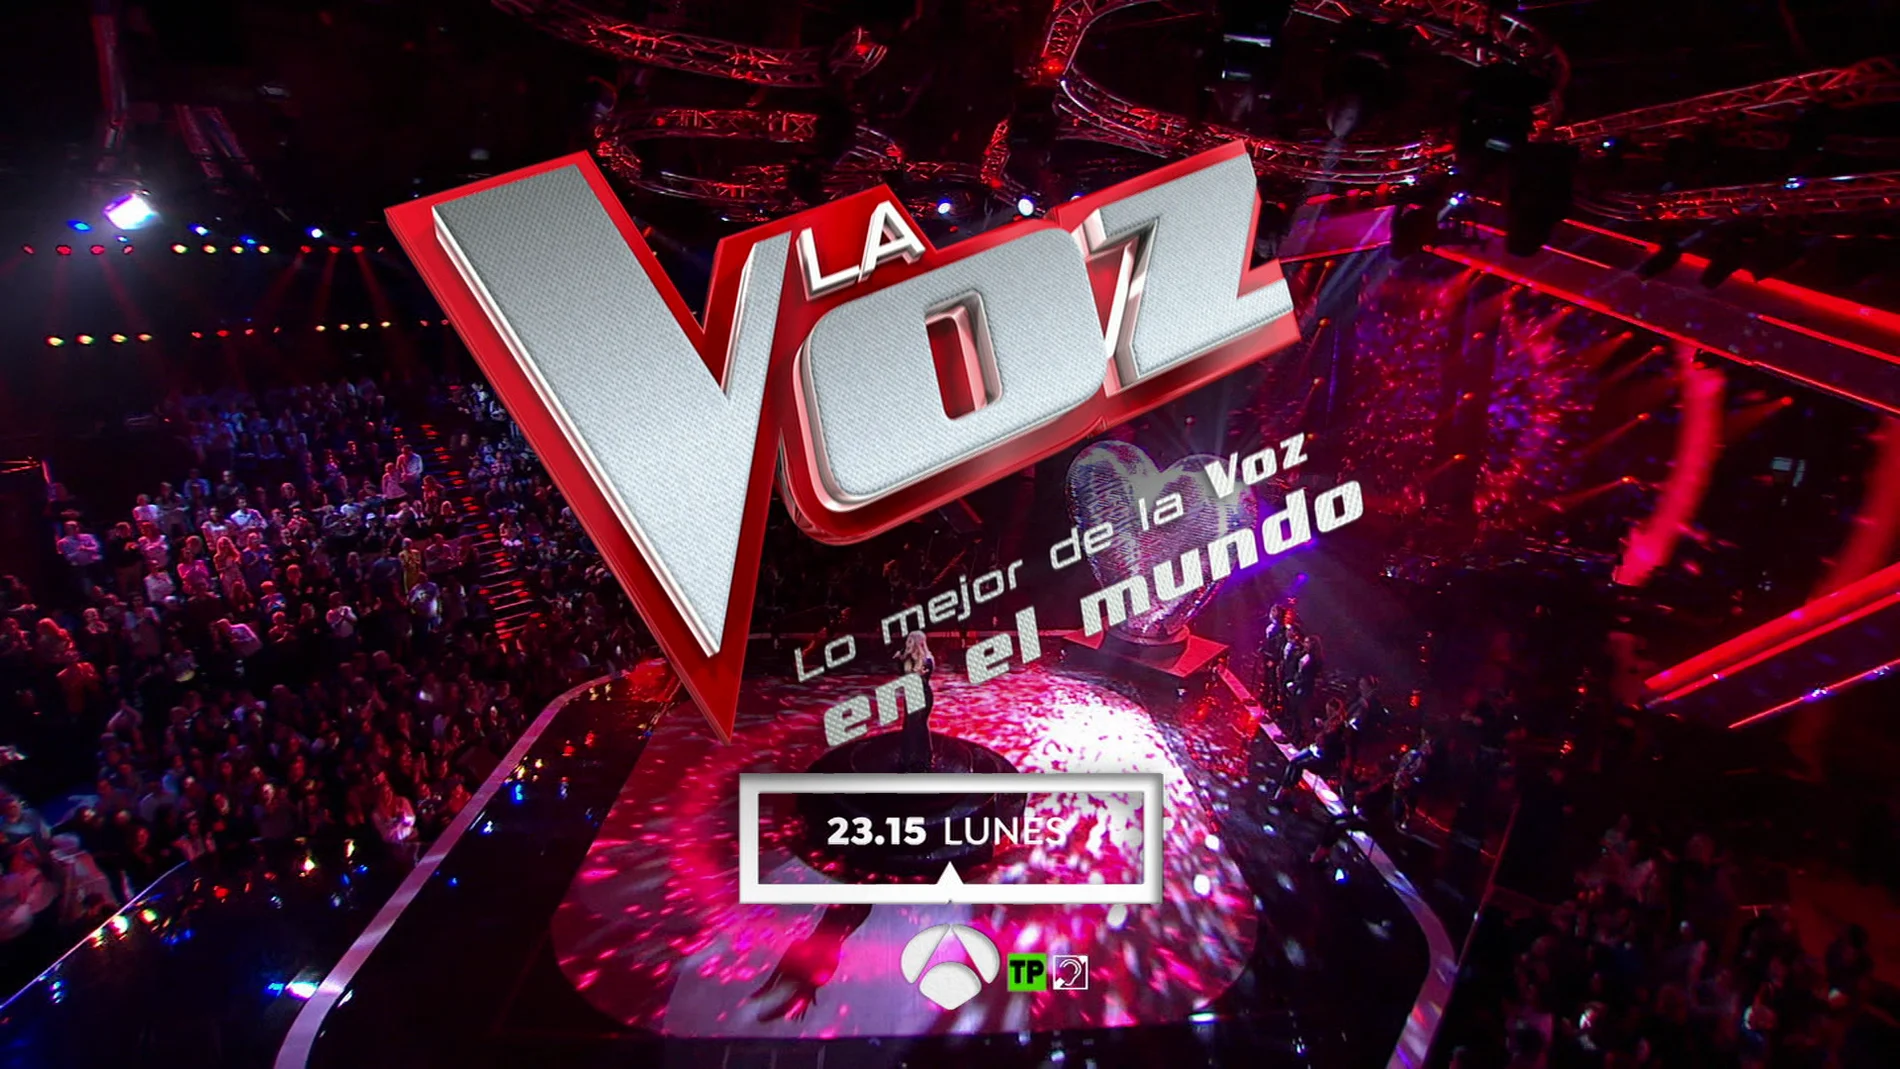 Lo mejor de 'La Voz' en el mundo, esta Nochebuena en Antena 3